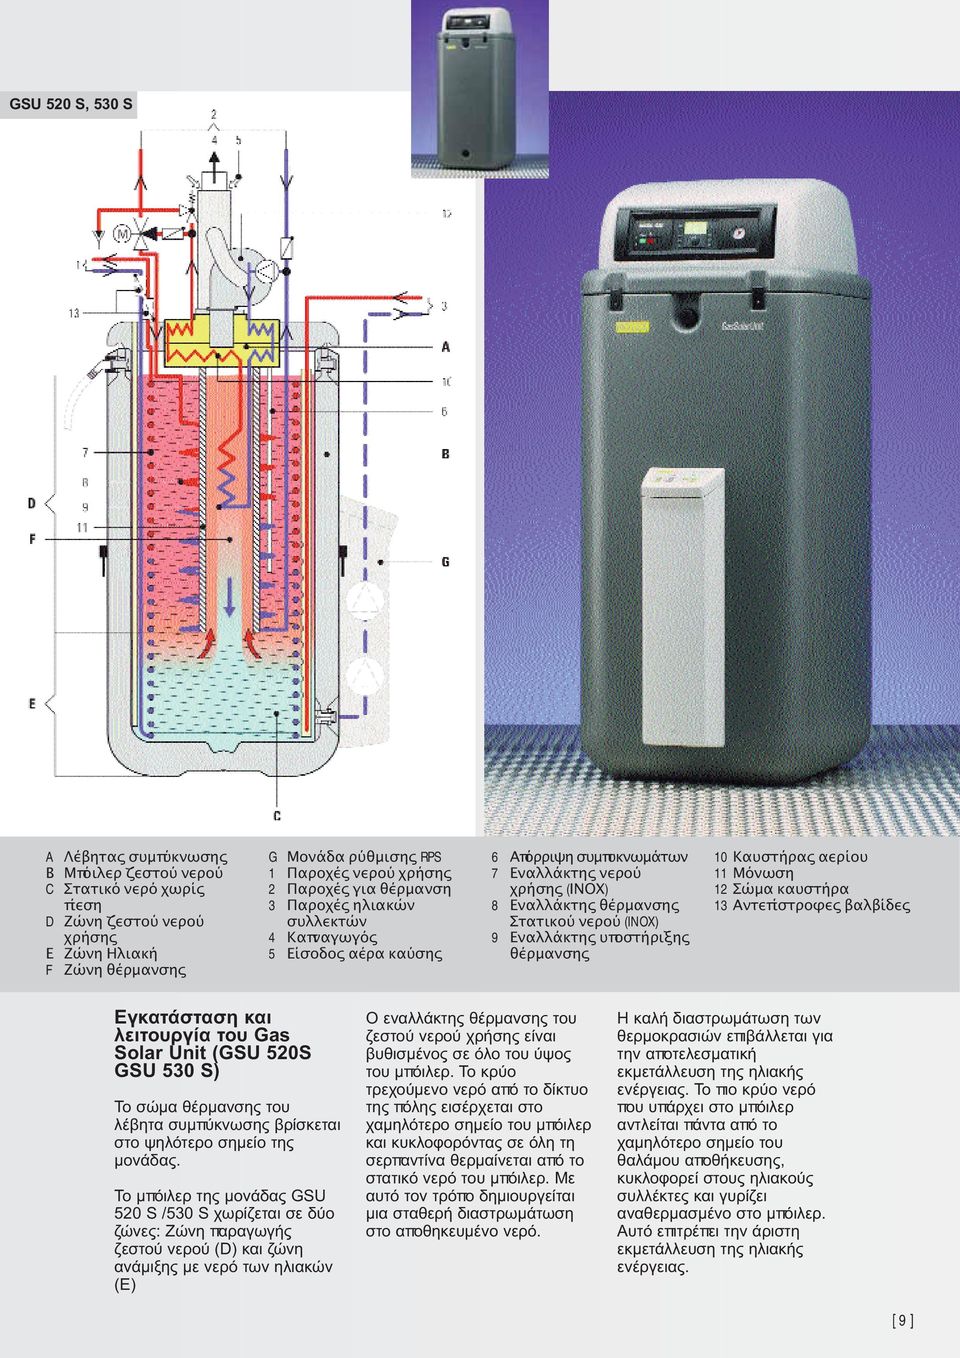 υϖοστήριξης θέρµανσης 10 Καυστήρας αερίου 11 Μόνωση 12 Σώµα καυστήρα 13 Αντεϖίστροφες βαλβίδες Εγκατάσταση και λειτουργία του Gas Solar Unit (GSU 520S GSU 530 S) To σώμα θέρμανσης του λέβητα